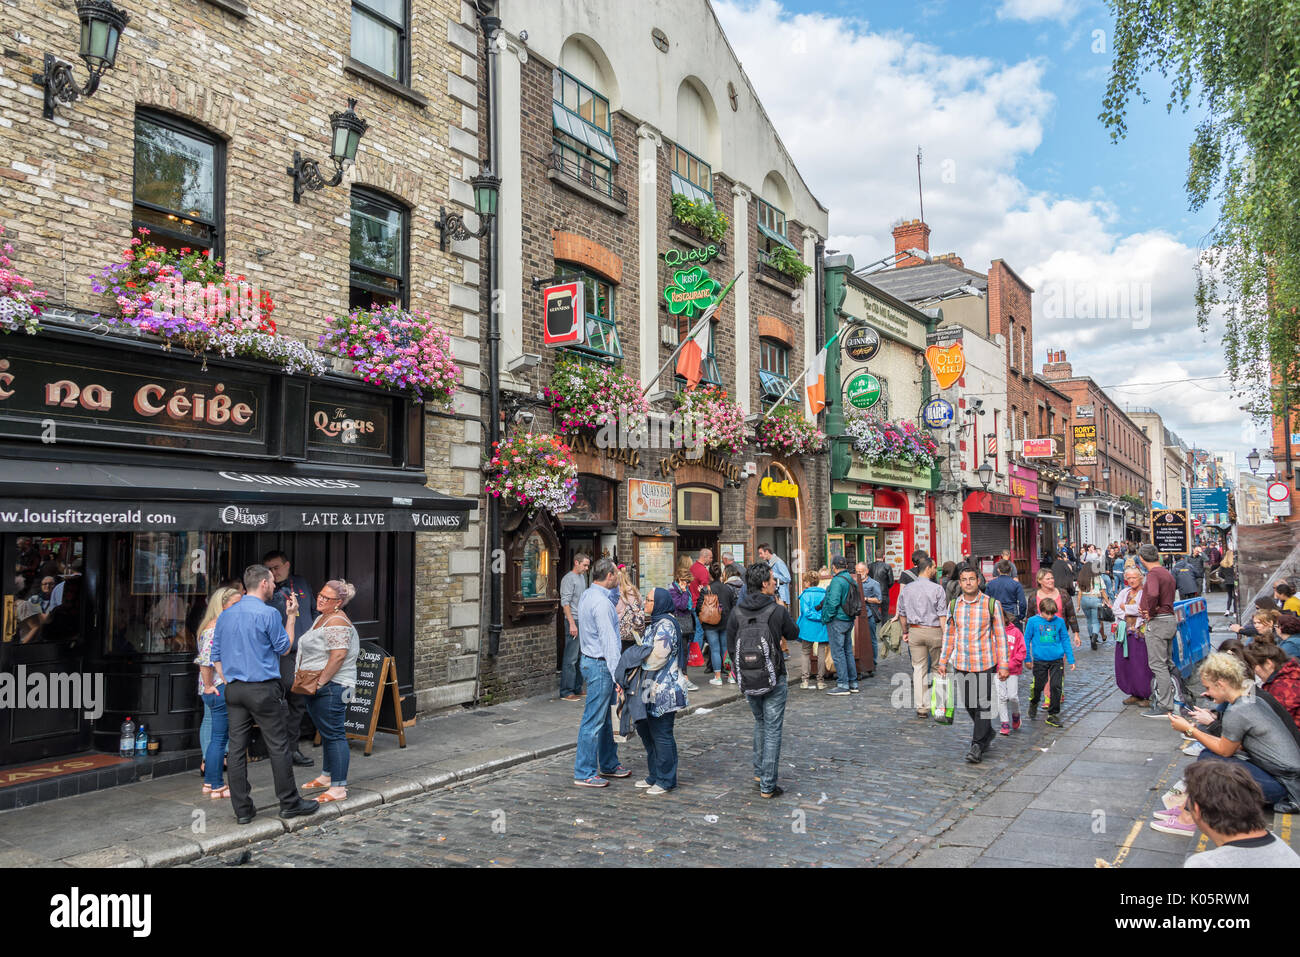 DUBLIN, Irland - 12. August: belebten Straße im touristischen Viertel Temple Bar in Dublin, Irland Stockfoto